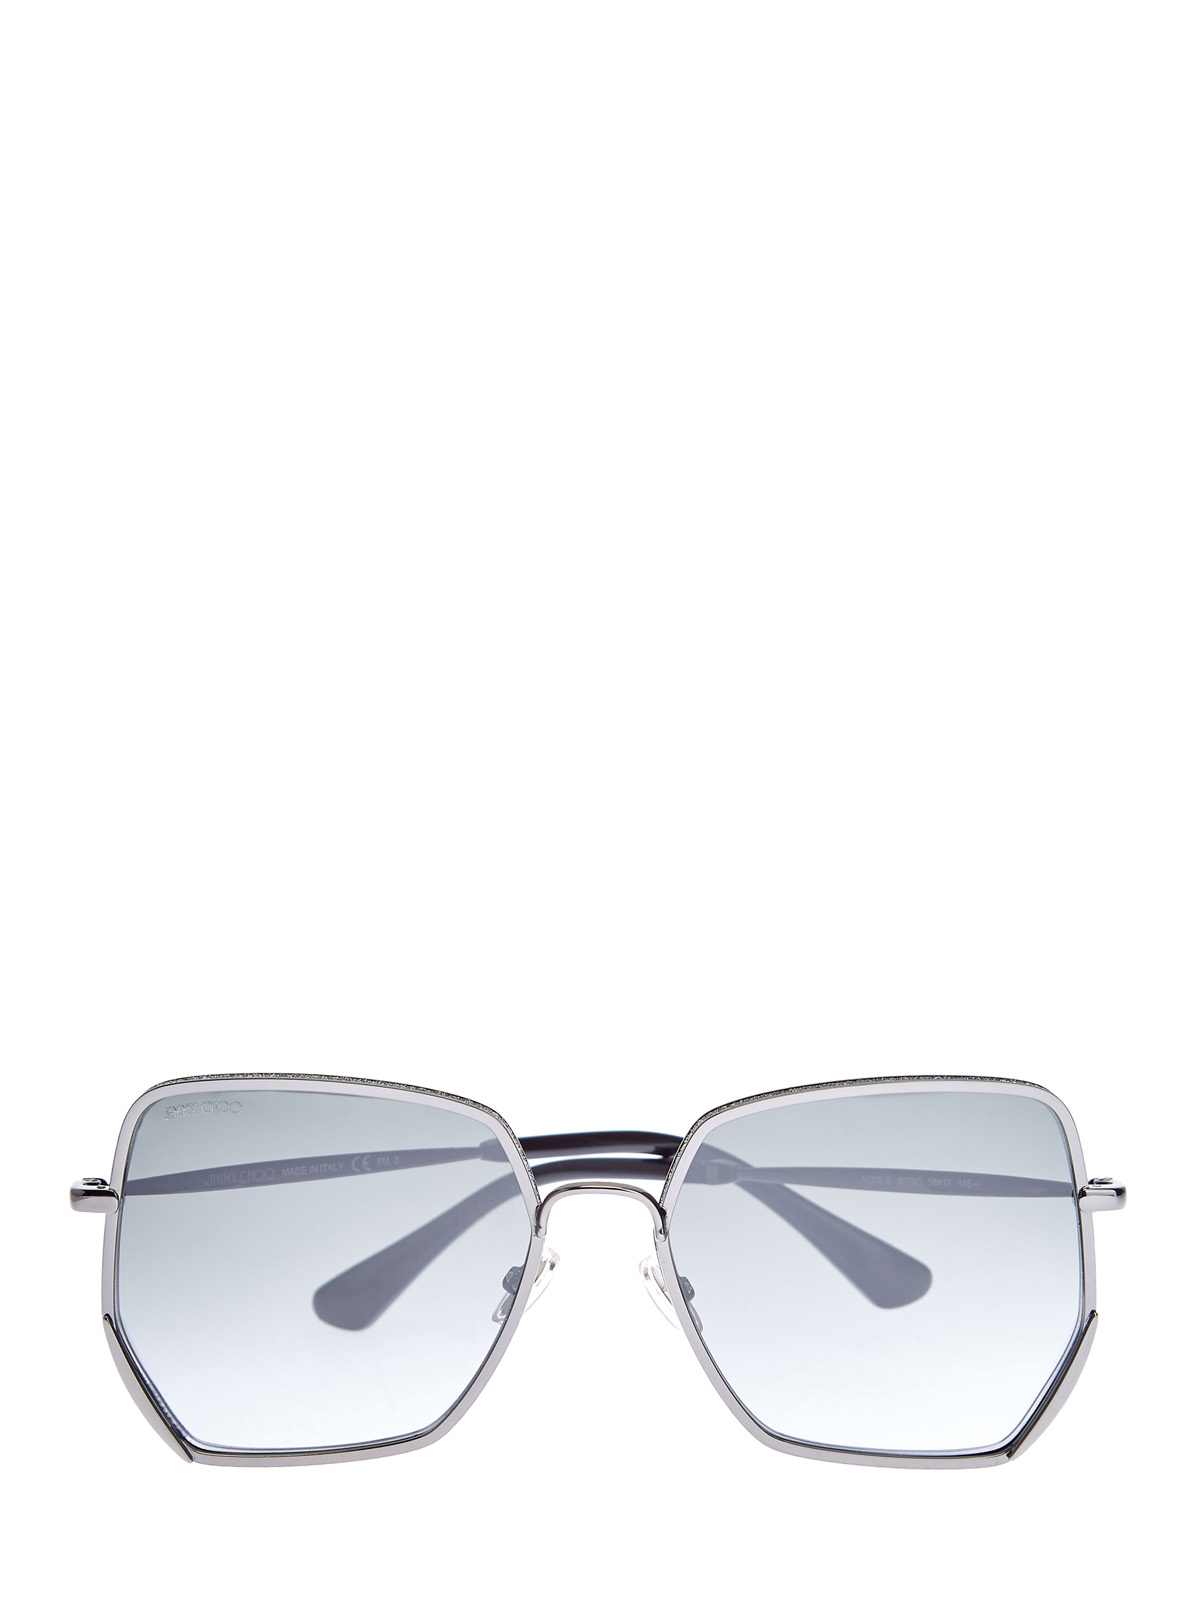 Очки Aline с металлической оправой и мерцающим напылением JIMMY CHOO  (sunglasses), цвет серый, размер S;M;L - фото 1